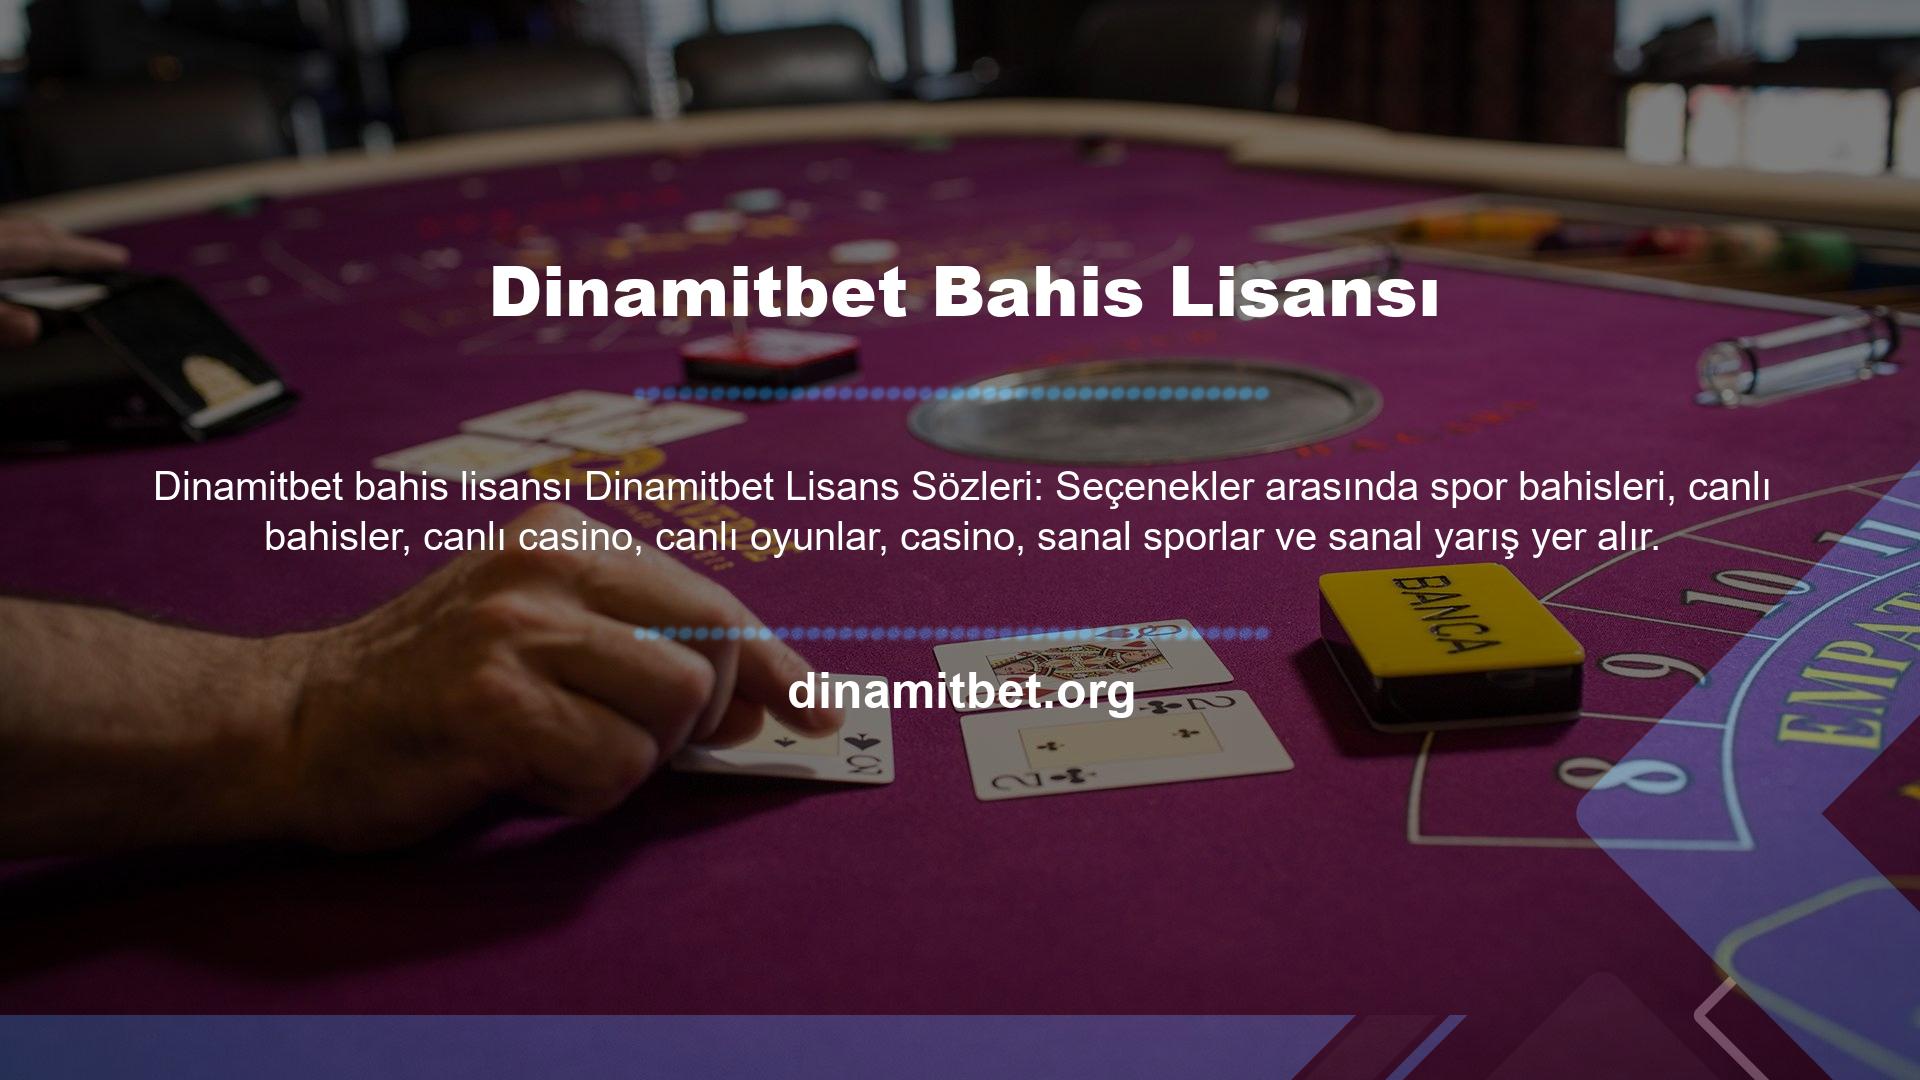 Dinamitbet Oyun Sitesi, üyelerine mevcut tüm oyun seçeneklerini lisanslı olarak sunmaktadır